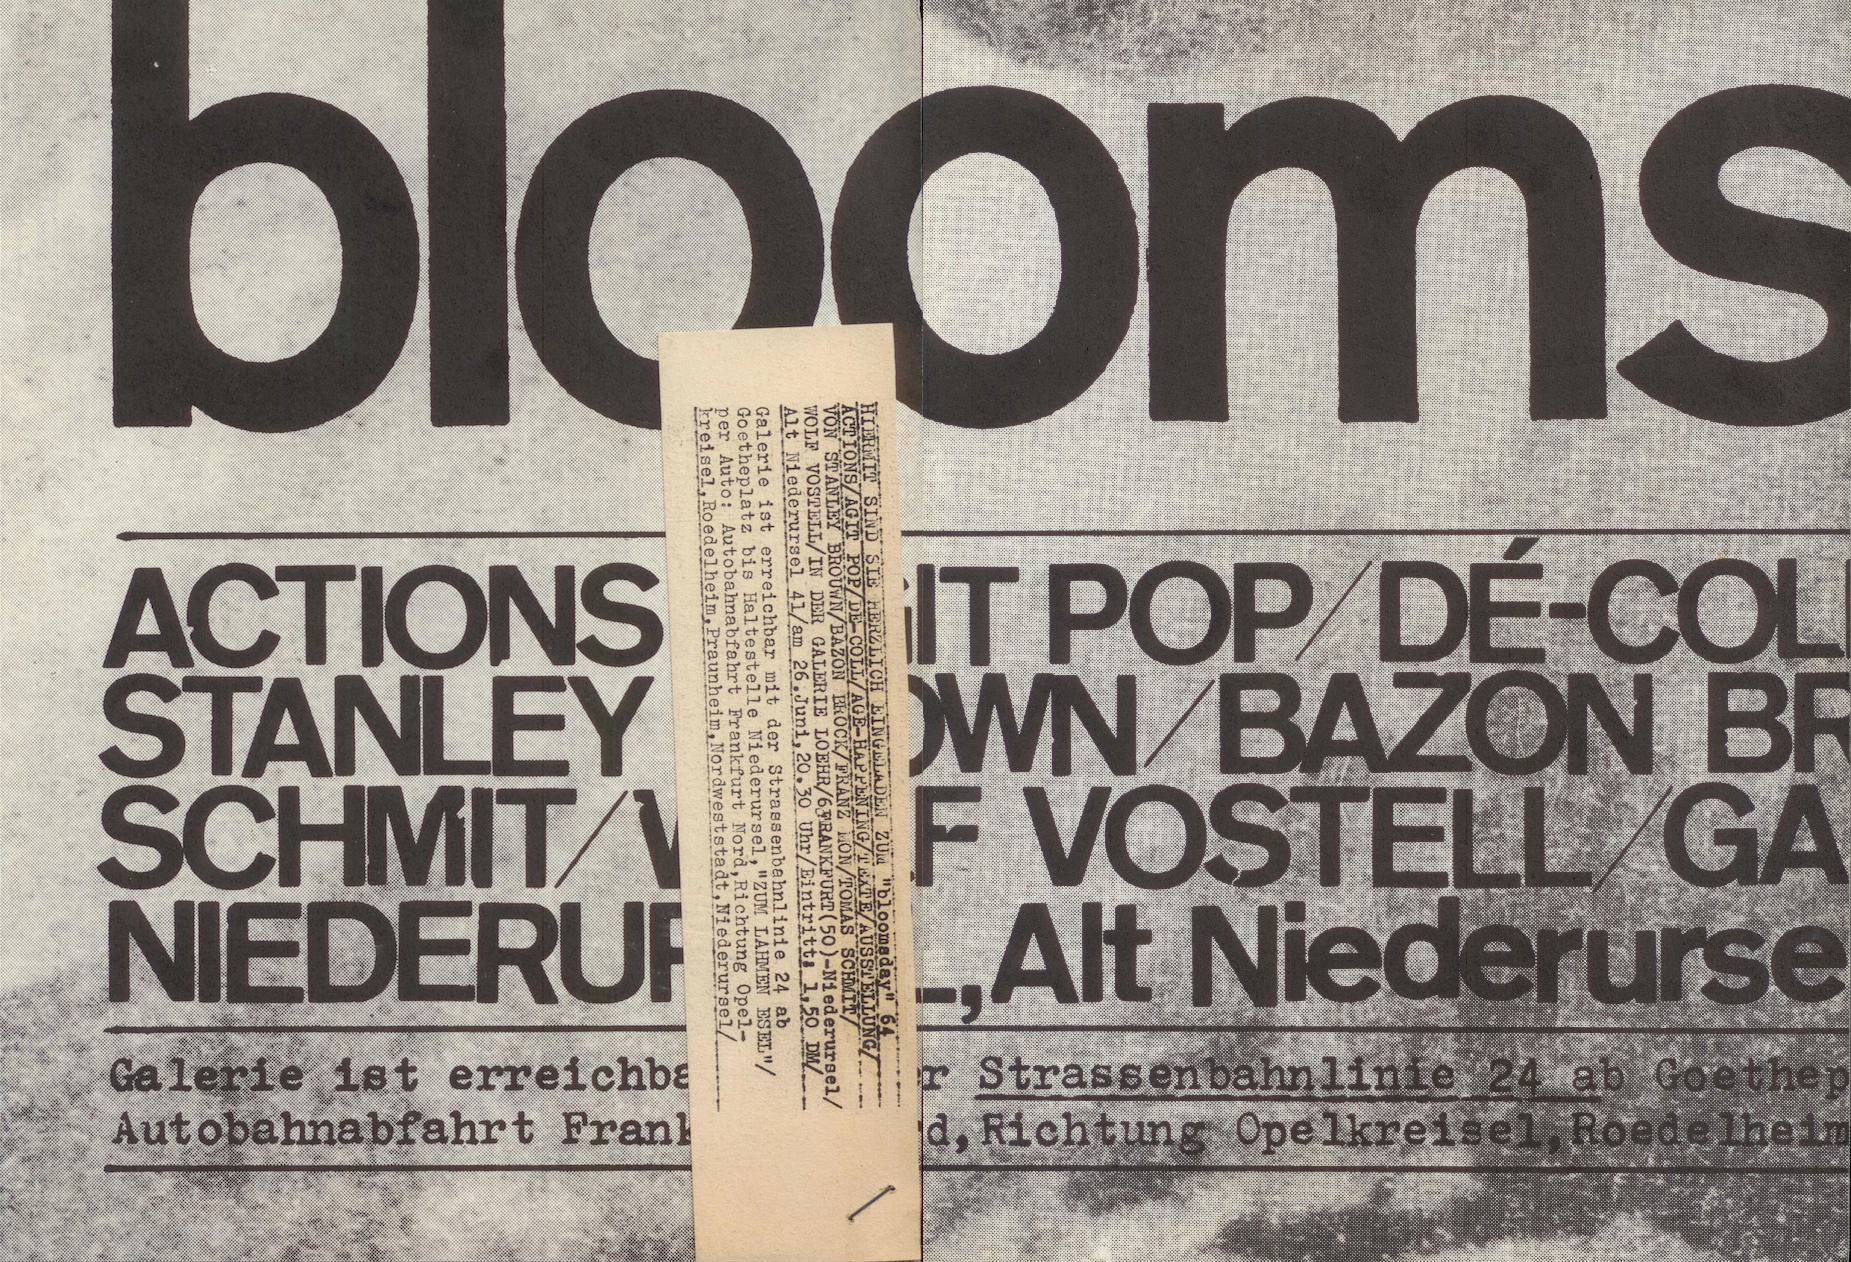 bloomsday, Bild: ACTIONS / AGIT POP / DÉ-COLLAGE / AGE-HAPPENING / TEXTE / AUSSTELLUNG. Galerie Loehr, Frankfurt - Niederursel. 26. Juni 1963. (Vorder- & Rückseite).